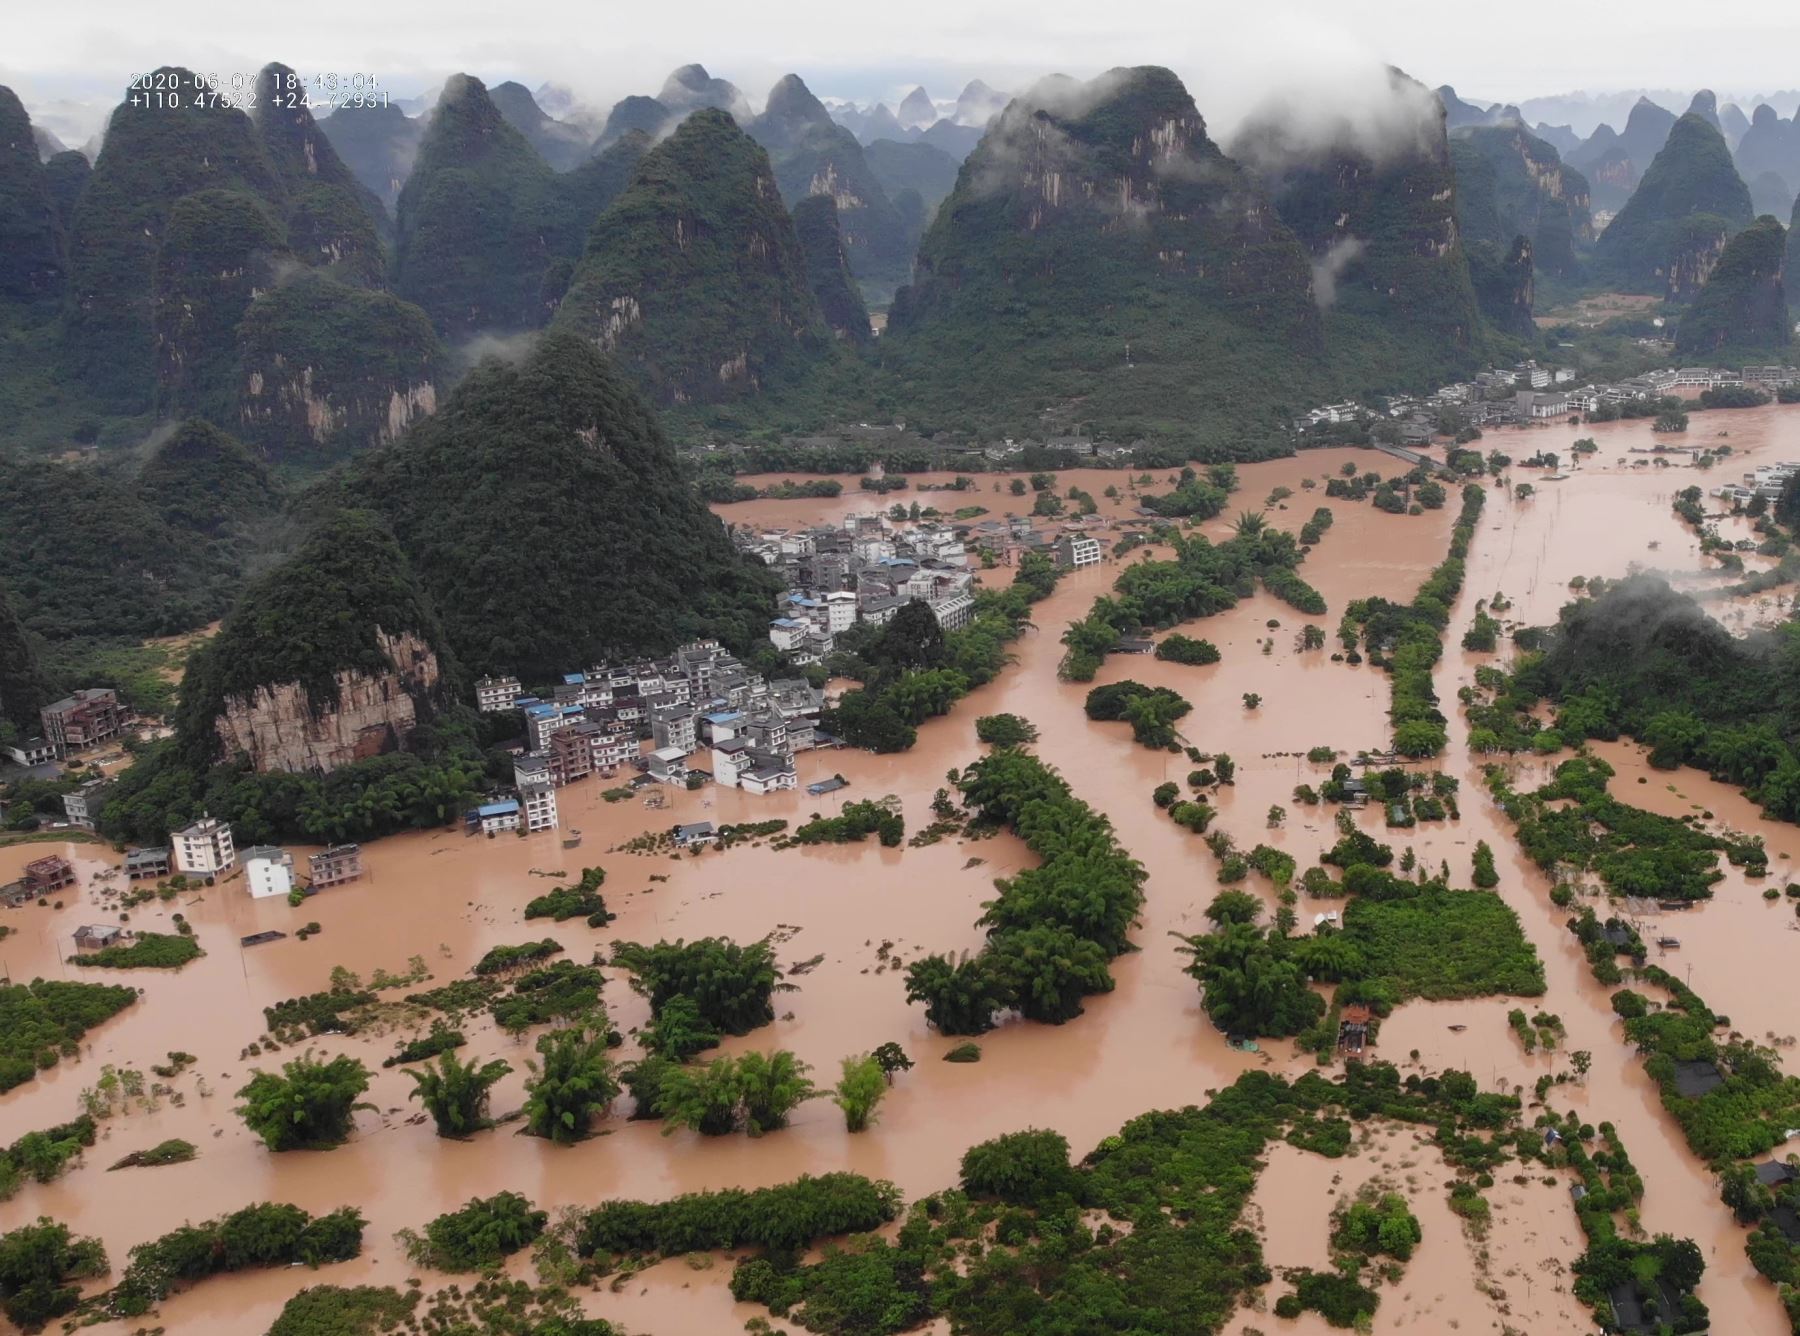 Vista aérea de las inundaciones en el condado de Yangshuo, región autonómica de Guangxi Zhuang (China). Por lo menos 19 personas han muerto, 10 permanecen desaparecidas y 2.63 millones se han visto afectadas por las inundaciones provocadas por lluvias torrenciales en el centro y el sur de China, informó hoy la agencia estatal de noticias Xinhua. Foto: Efe/Xiao Fan.